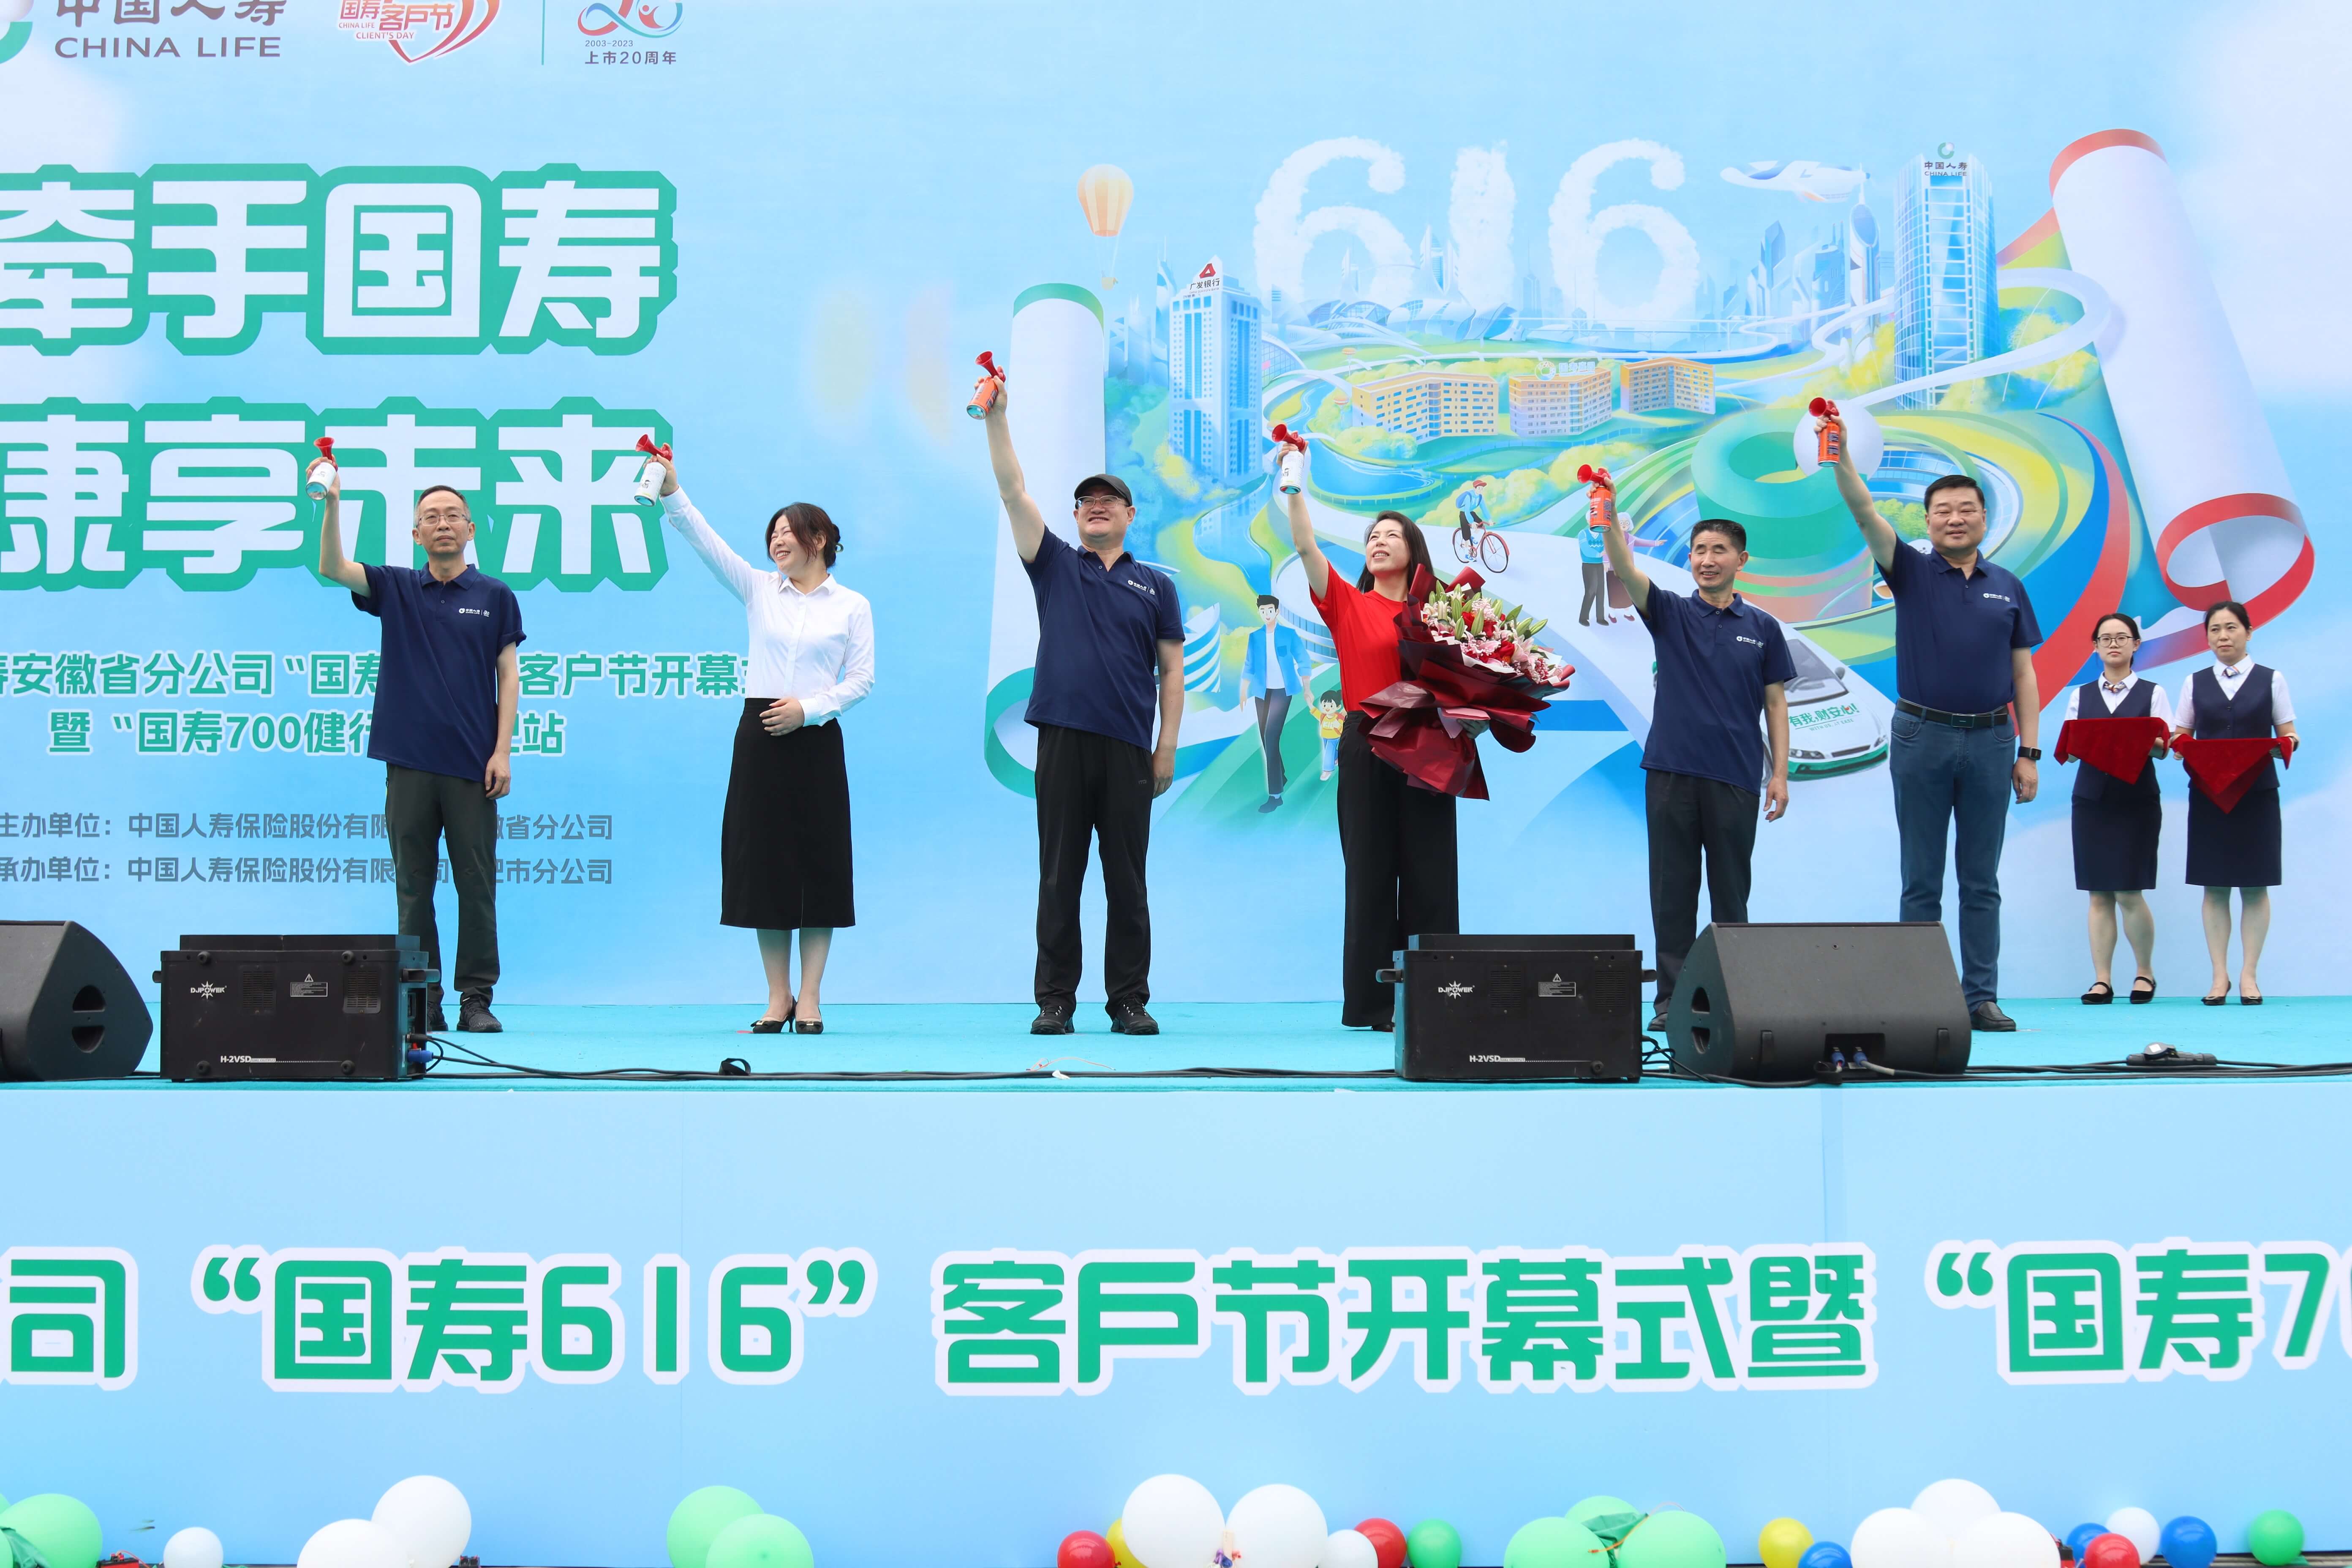 中国人寿安徽省分公司成功举办“国寿 616”客户节开幕式